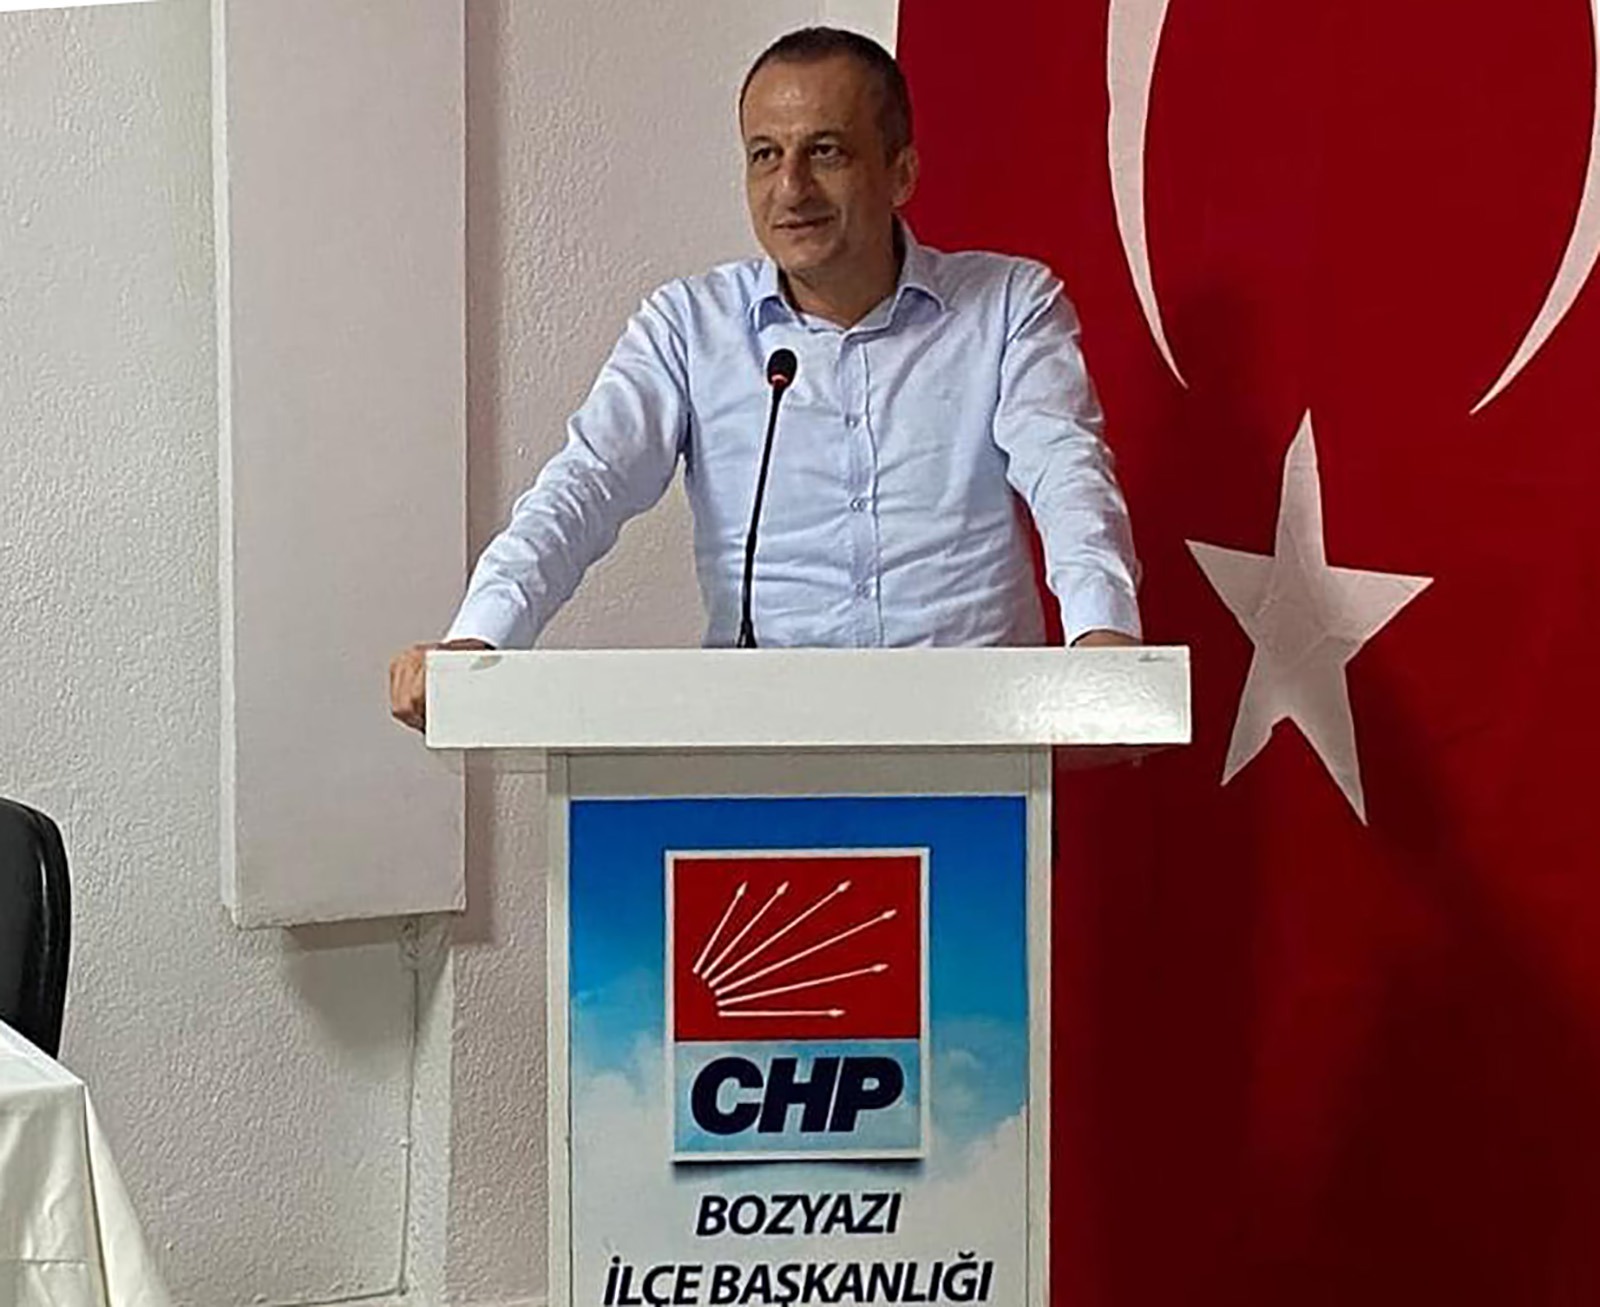 “Türkiye’nin CHP’ye ihtiyacı var”